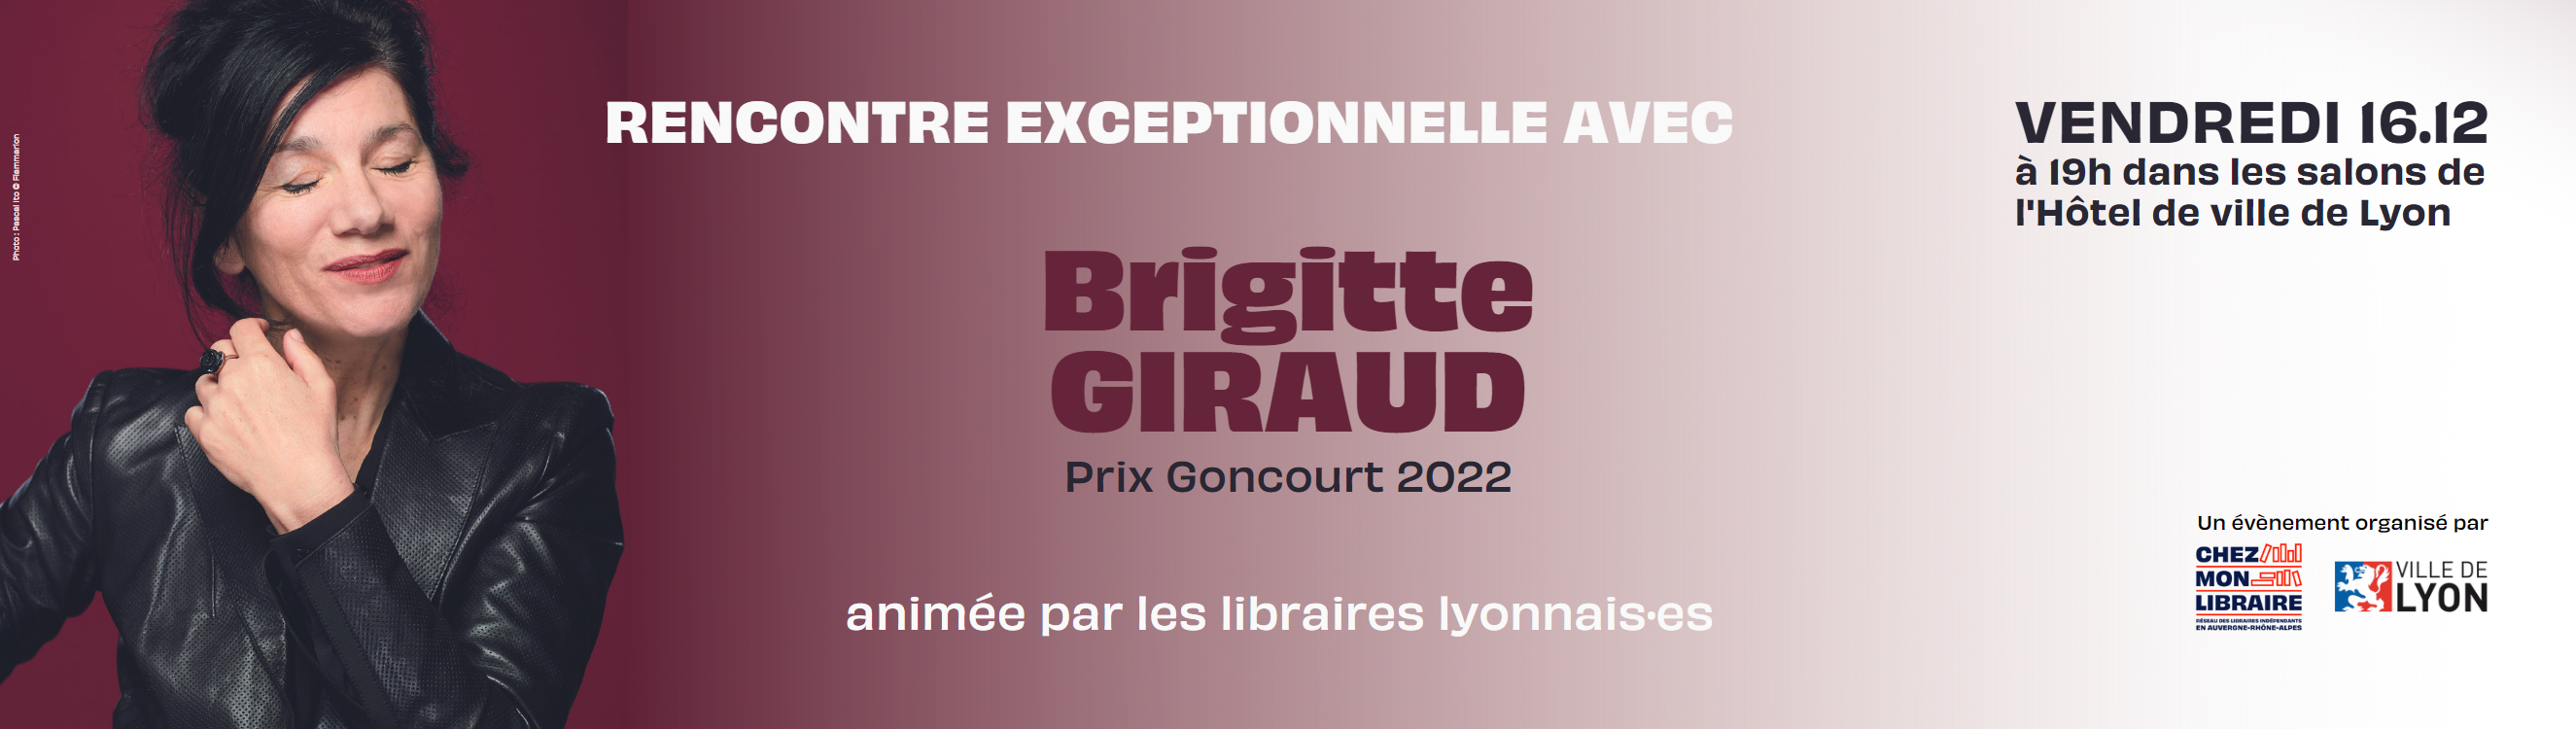 Rencontre exceptionnelle avec Brigitte Giraud le 16 décembre à Lyon !